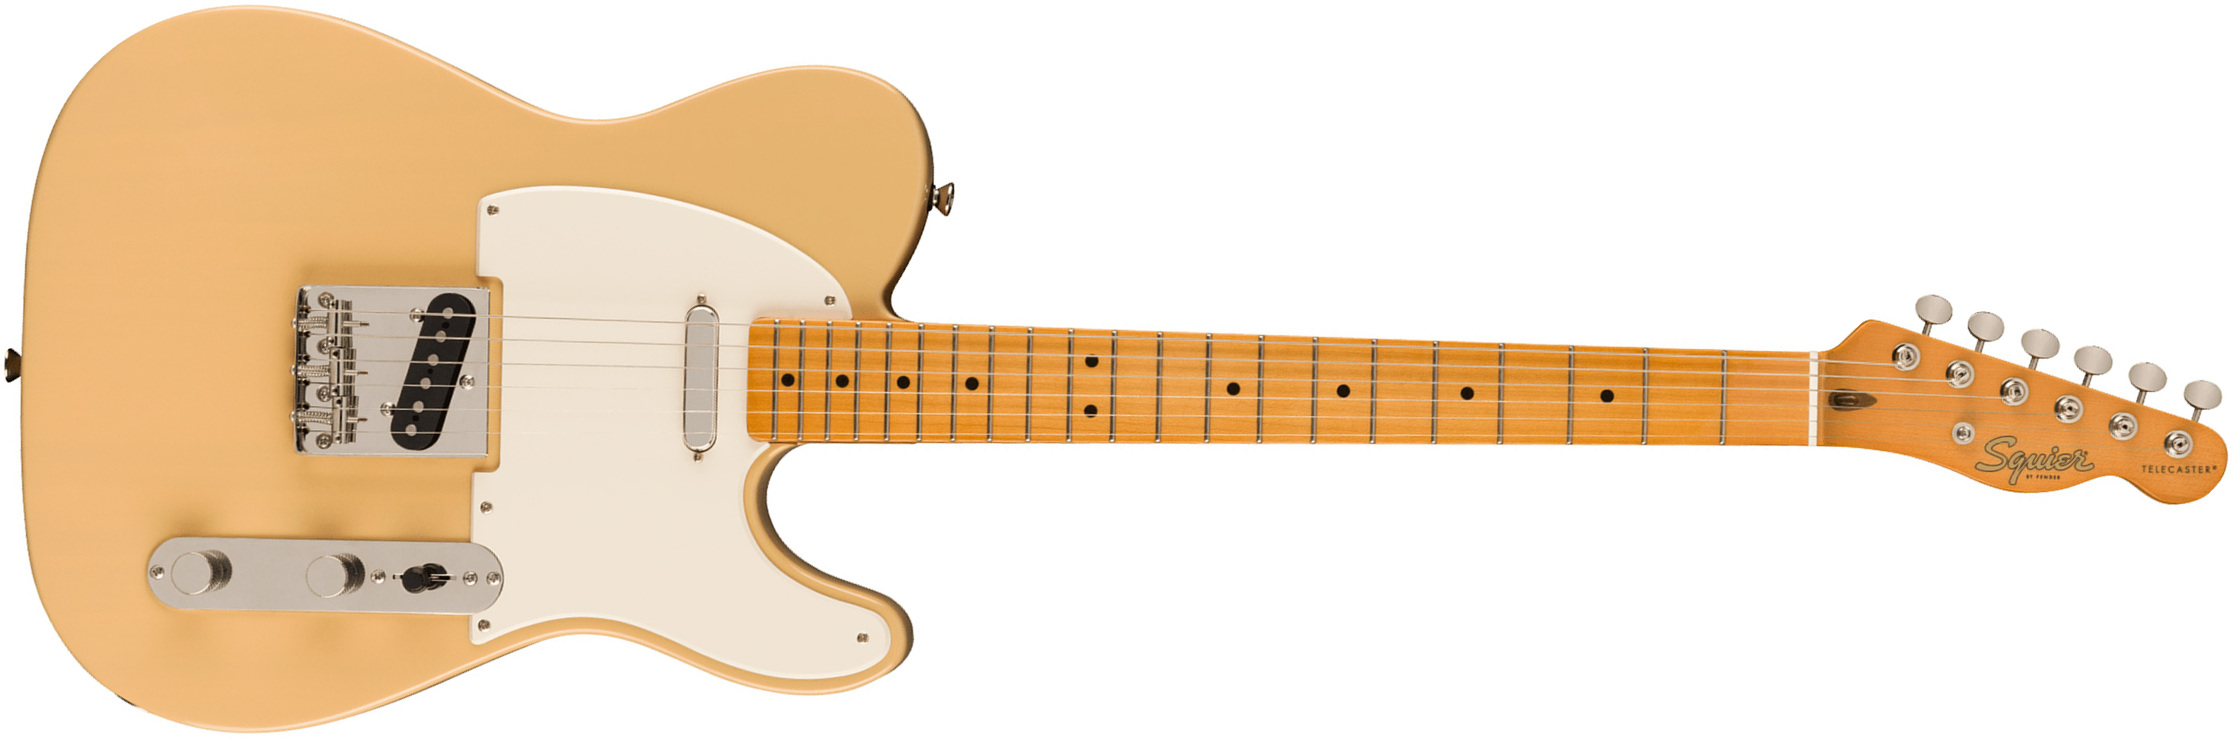 Squier Tele '50s Parchment Pickguard Classic Vibe Fsr 2s Ht Mn - Vintage Blonde - Tel shape electric guitar - Main picture